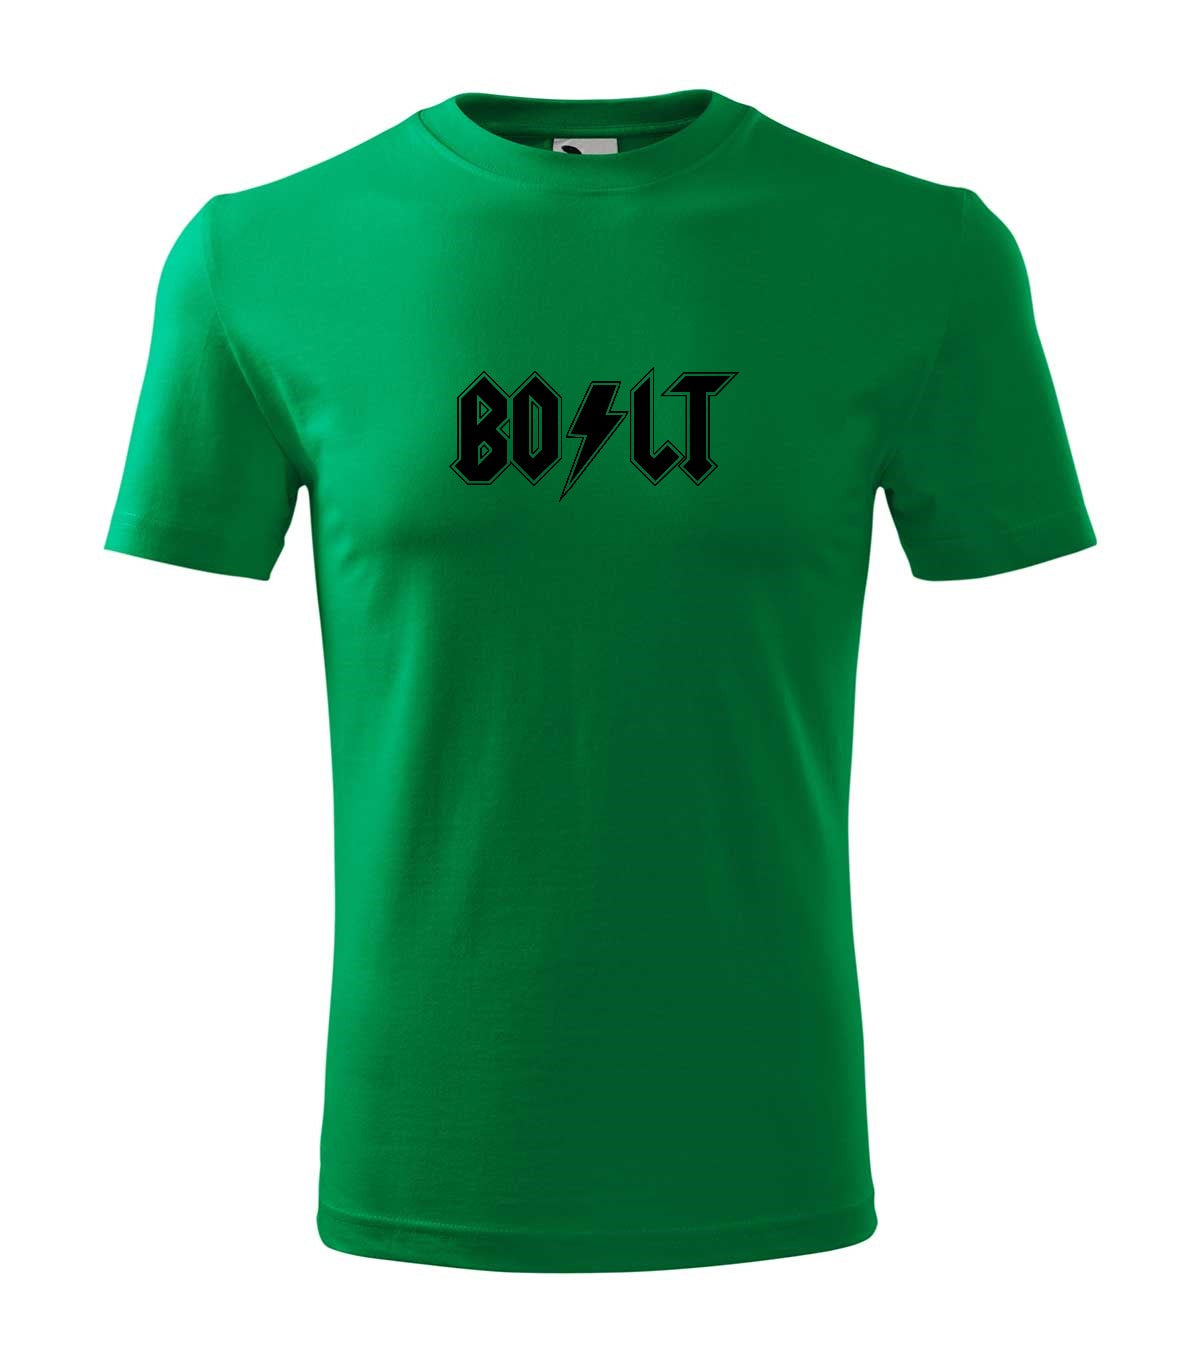 Bolt férfi technikai póló